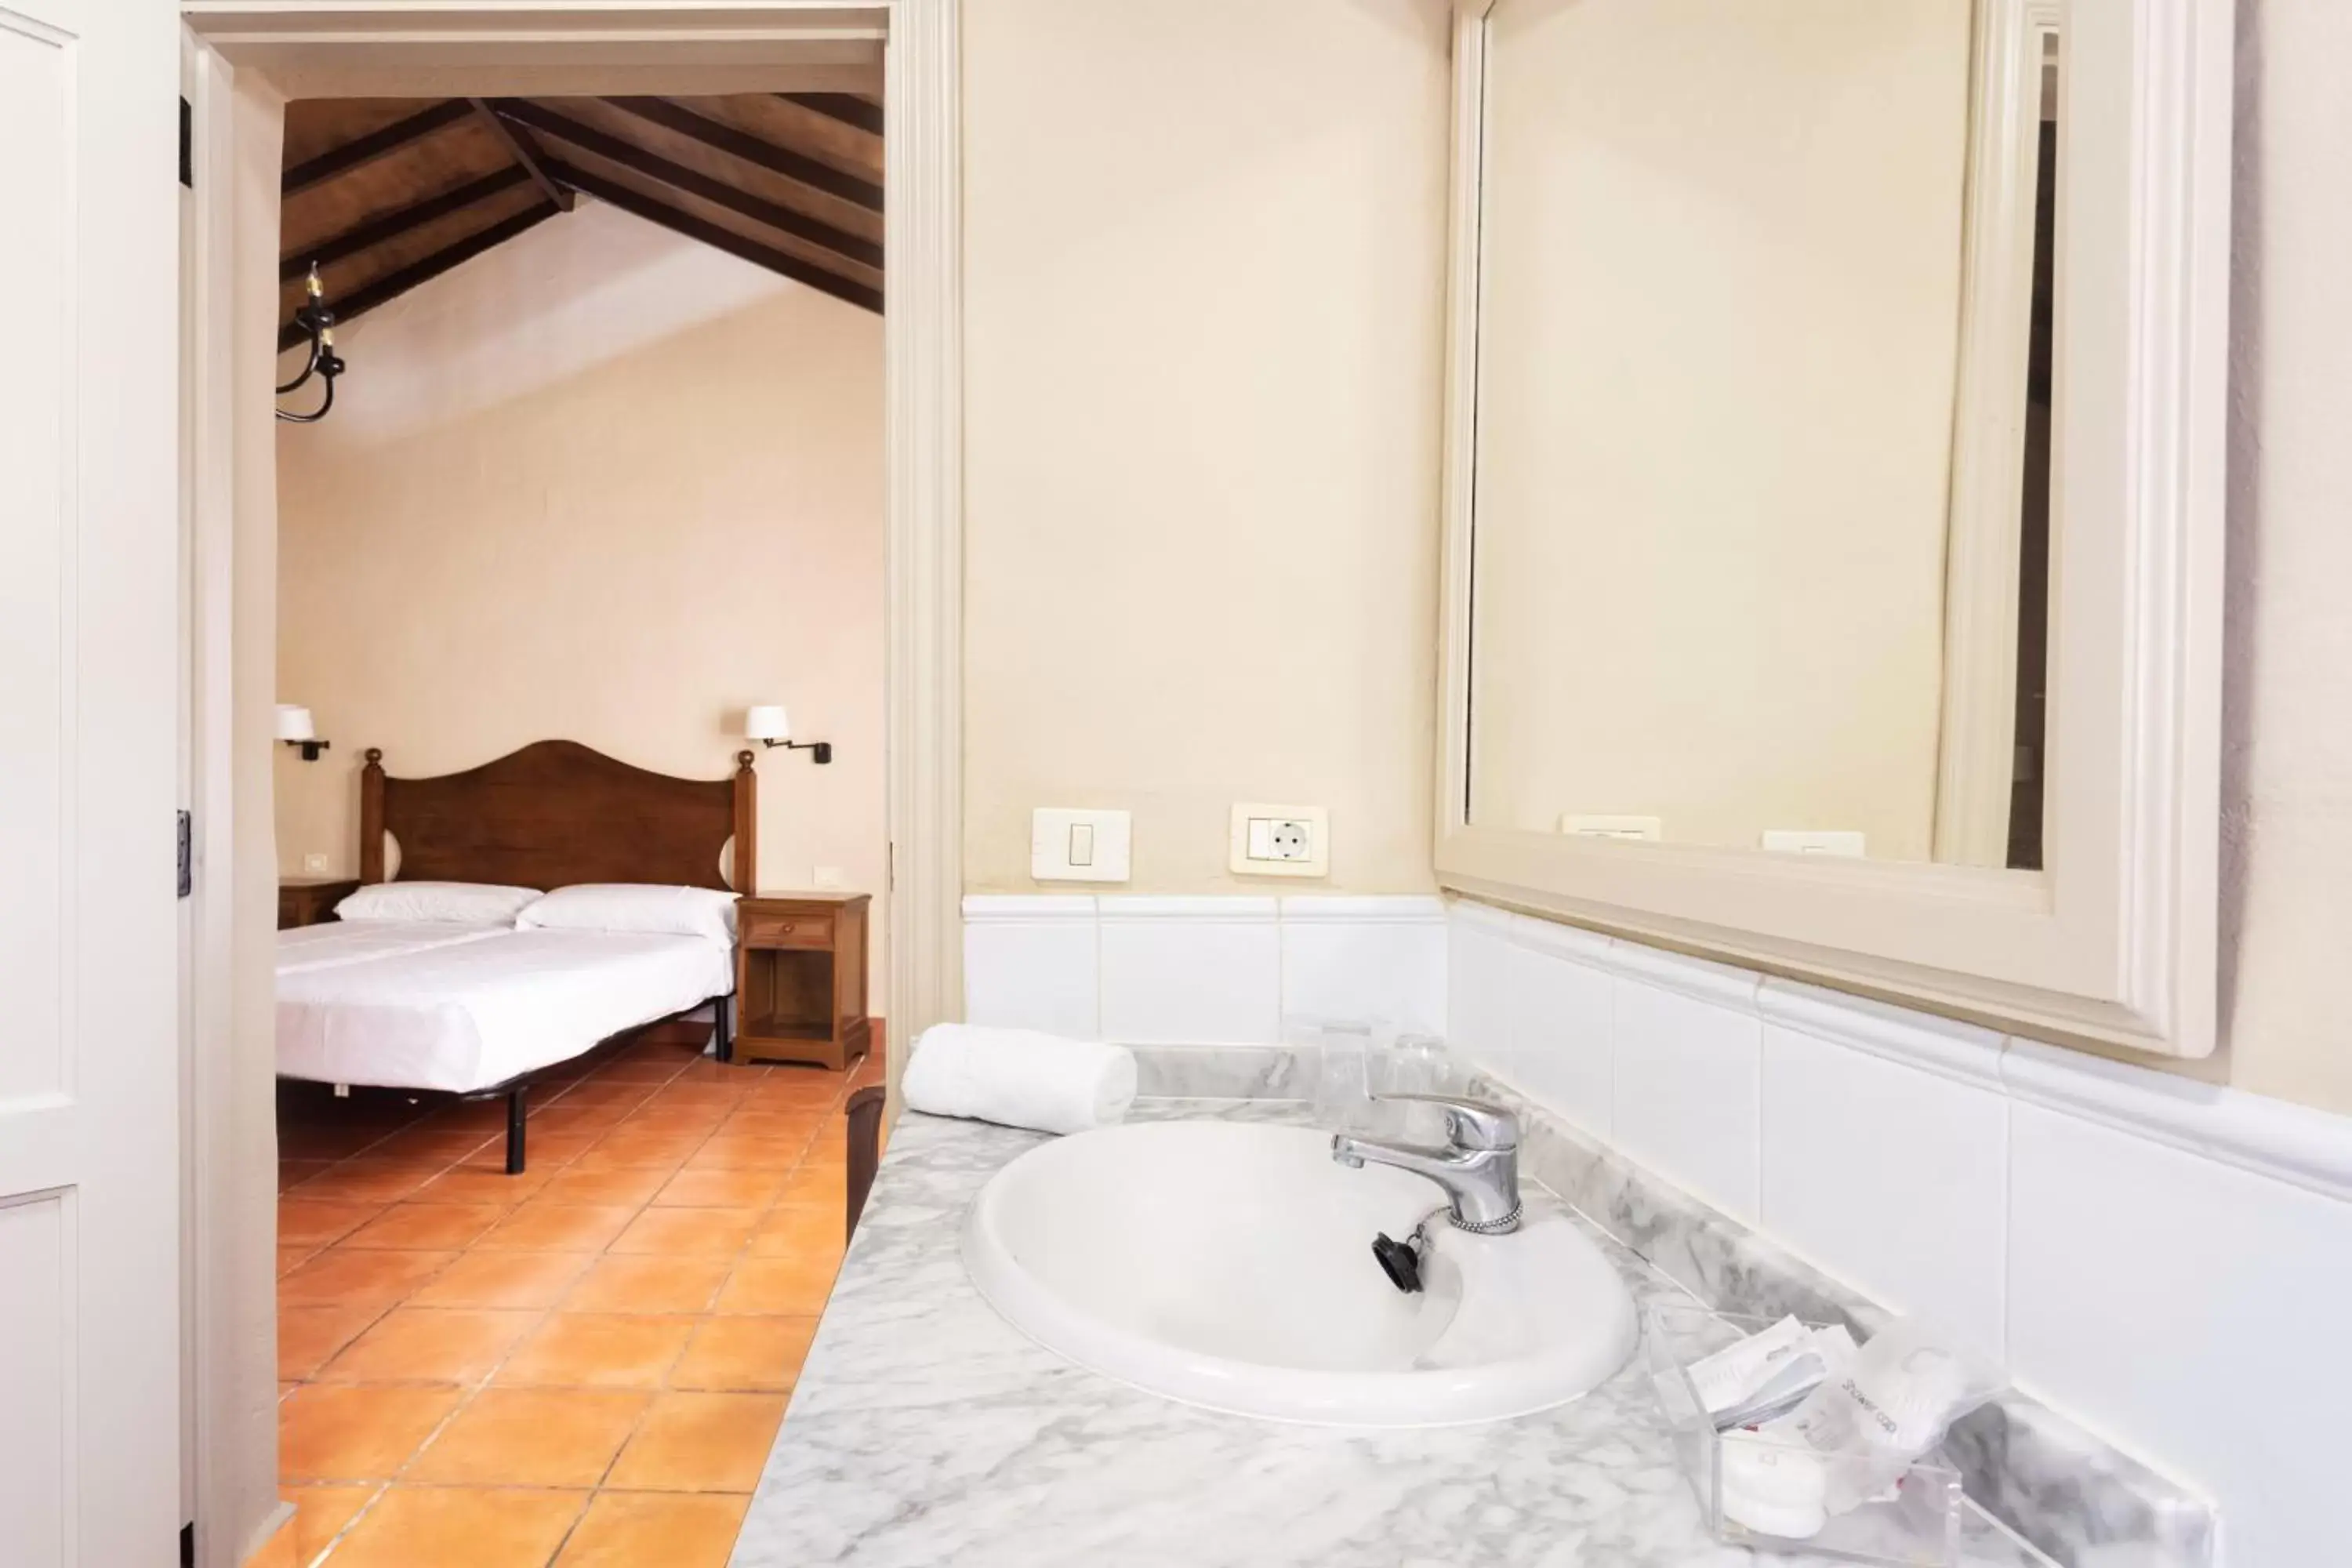 Bathroom in Hotel El Patio